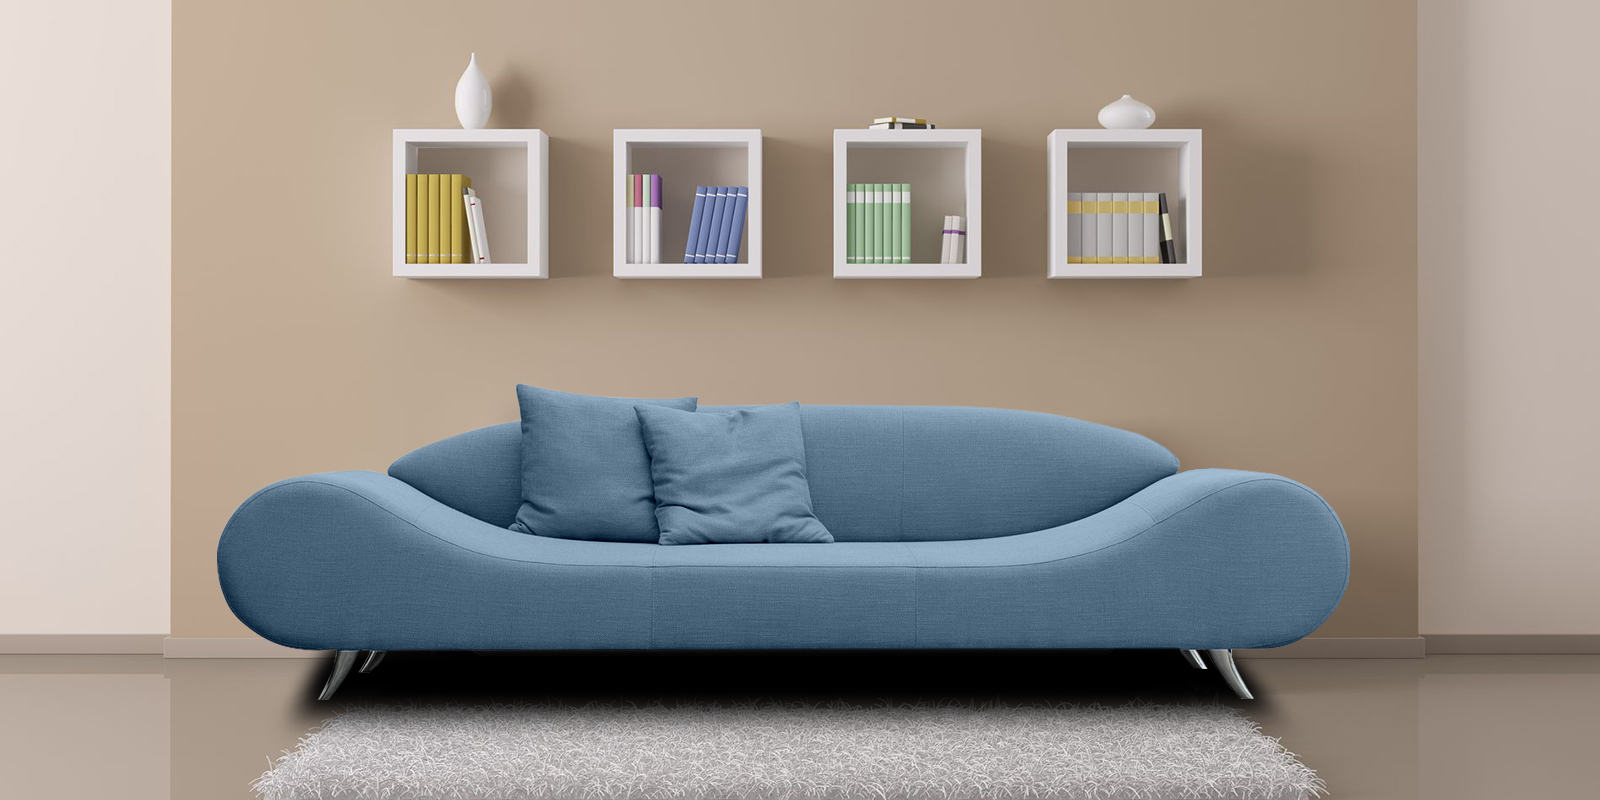 Astonishing Velvet 3 Seater Sofa in Light Blue Colour - Dreamzz ...